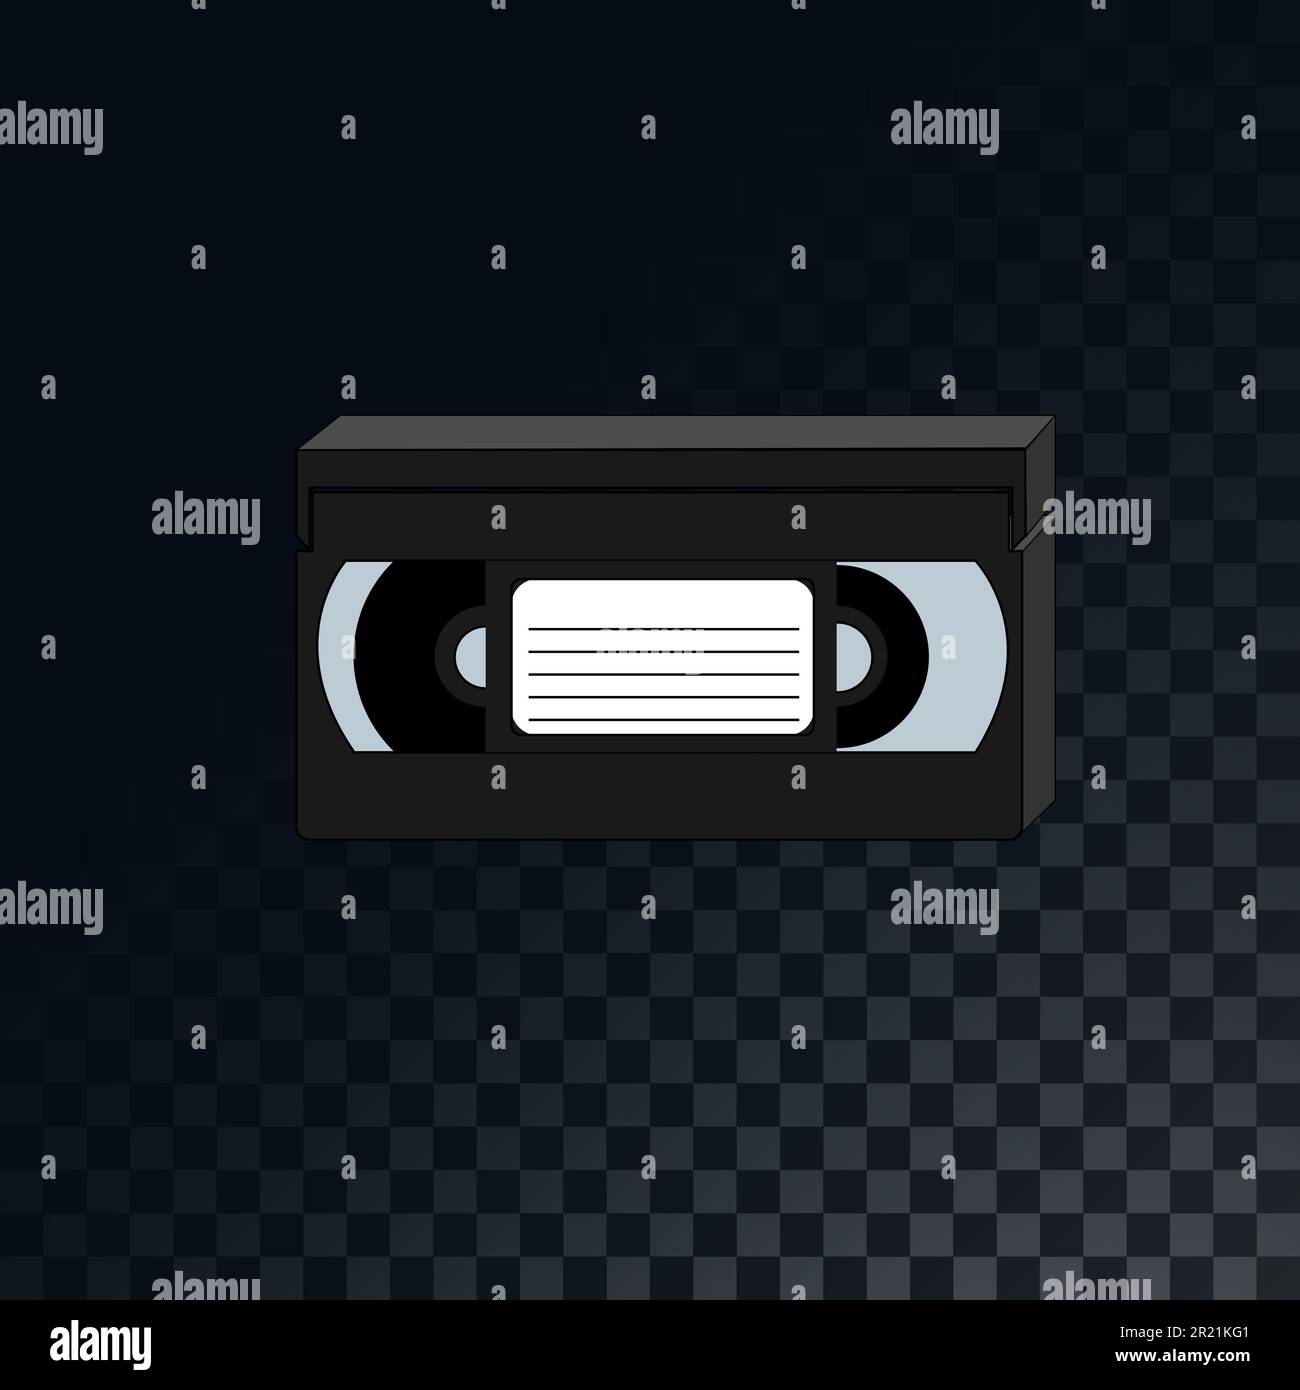 Una vecchia videocassetta analogica retrò d'epoca degli anni '70s, '80s, '90s su uno sfondo grigio scuro traslucido quadrato di quadrati. Illustrazione vettoriale. Illustrazione Vettoriale